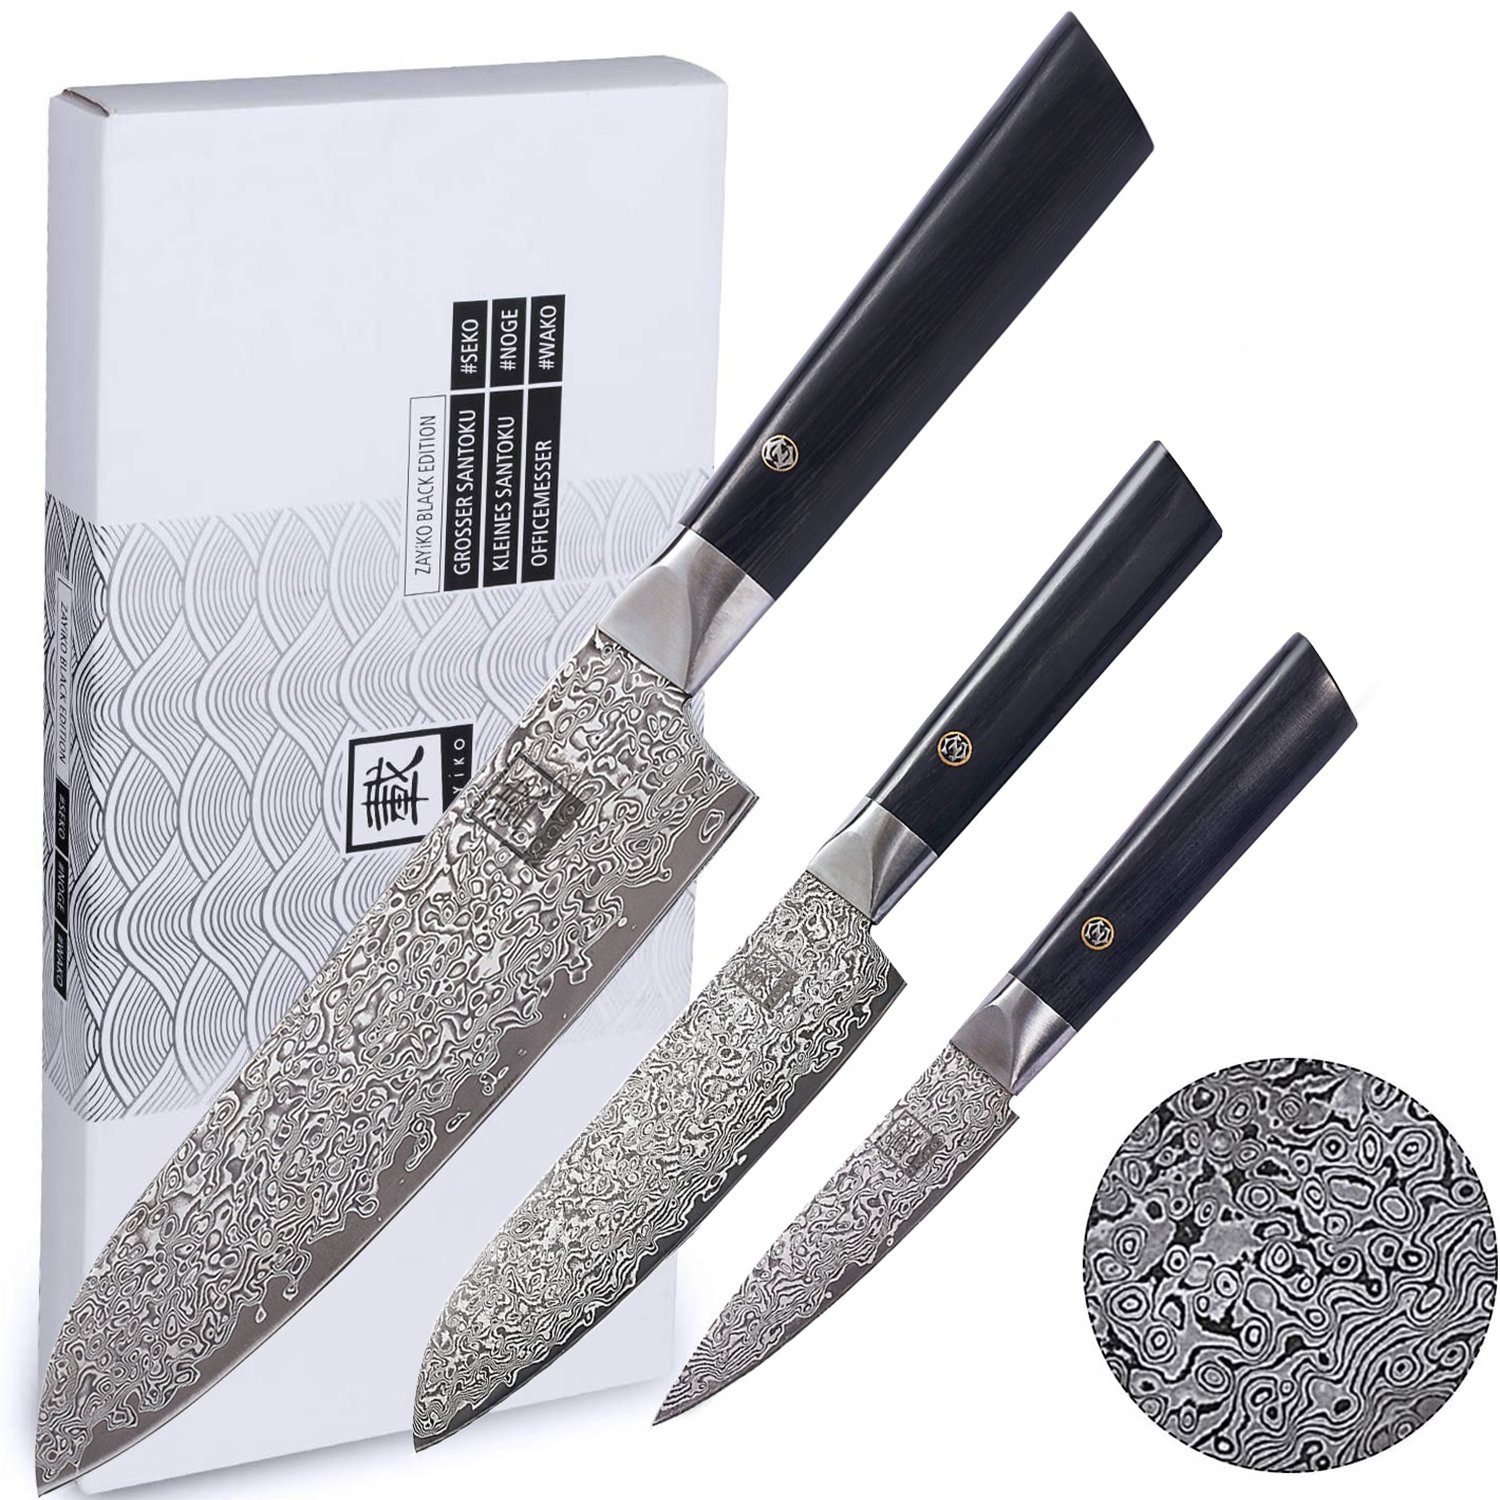 ZAYIKO Messer-Set Black Edition 3er Messerset I 9-18cm Klingen I dunkler Damast I Pakkah, dunkler Damaststahl